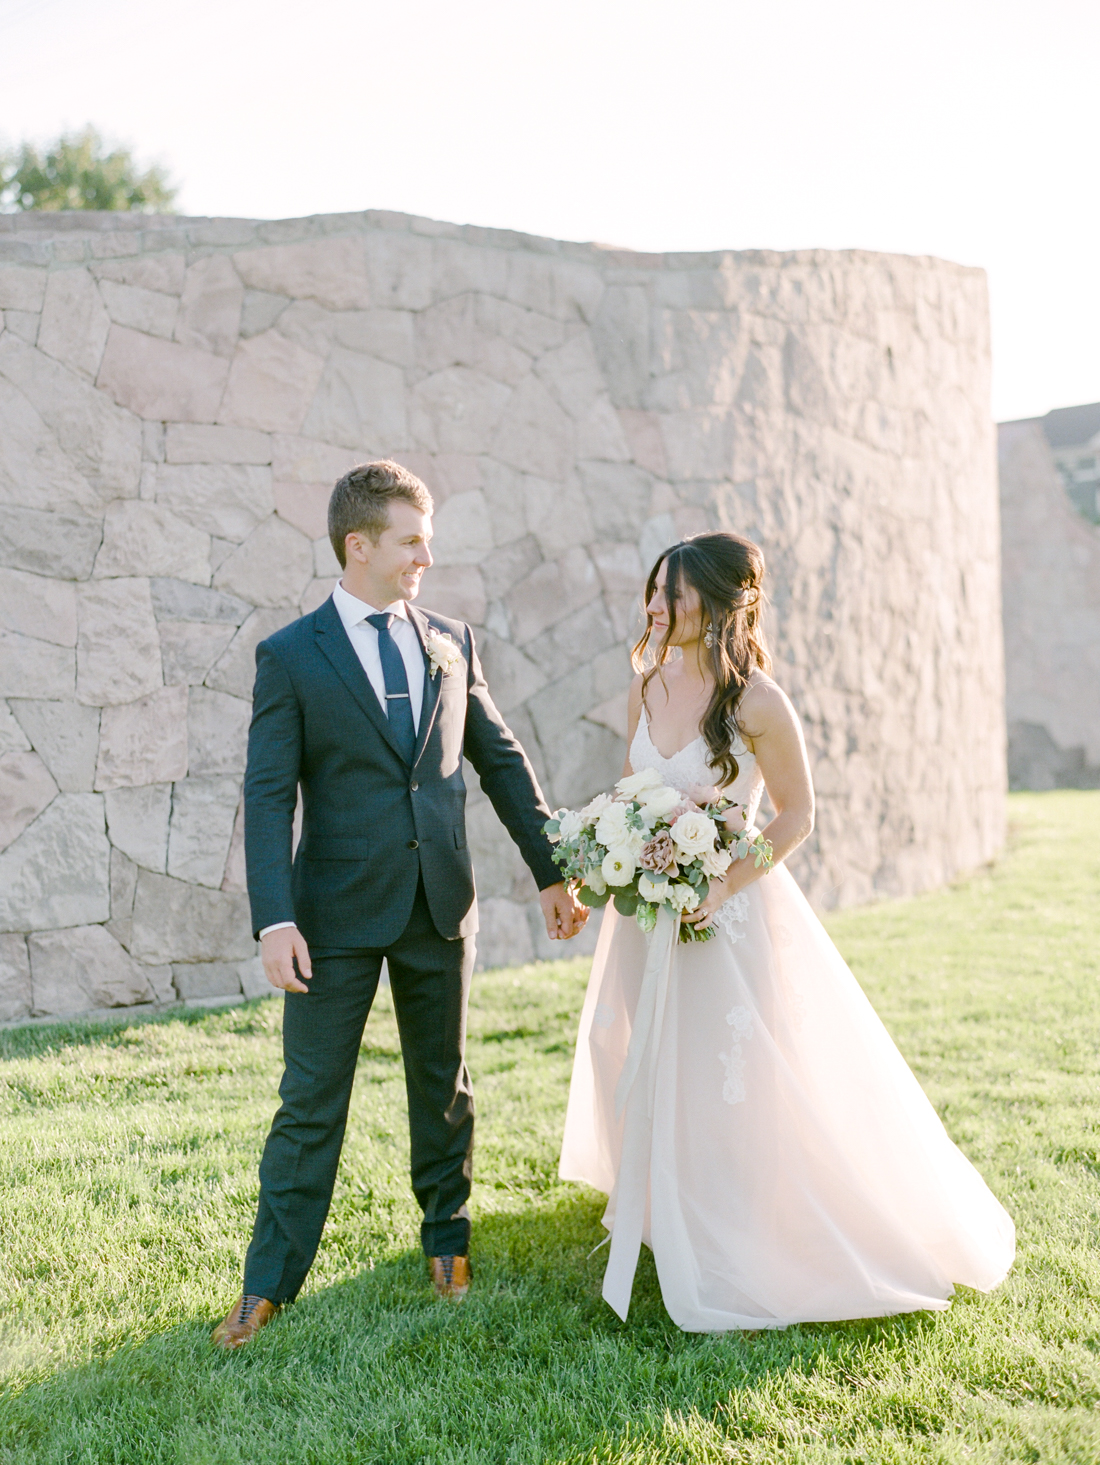 Kristin_Brett_TheKitchen_Denver_Wedding_by_Connie_Whitlock_web_284.jpg